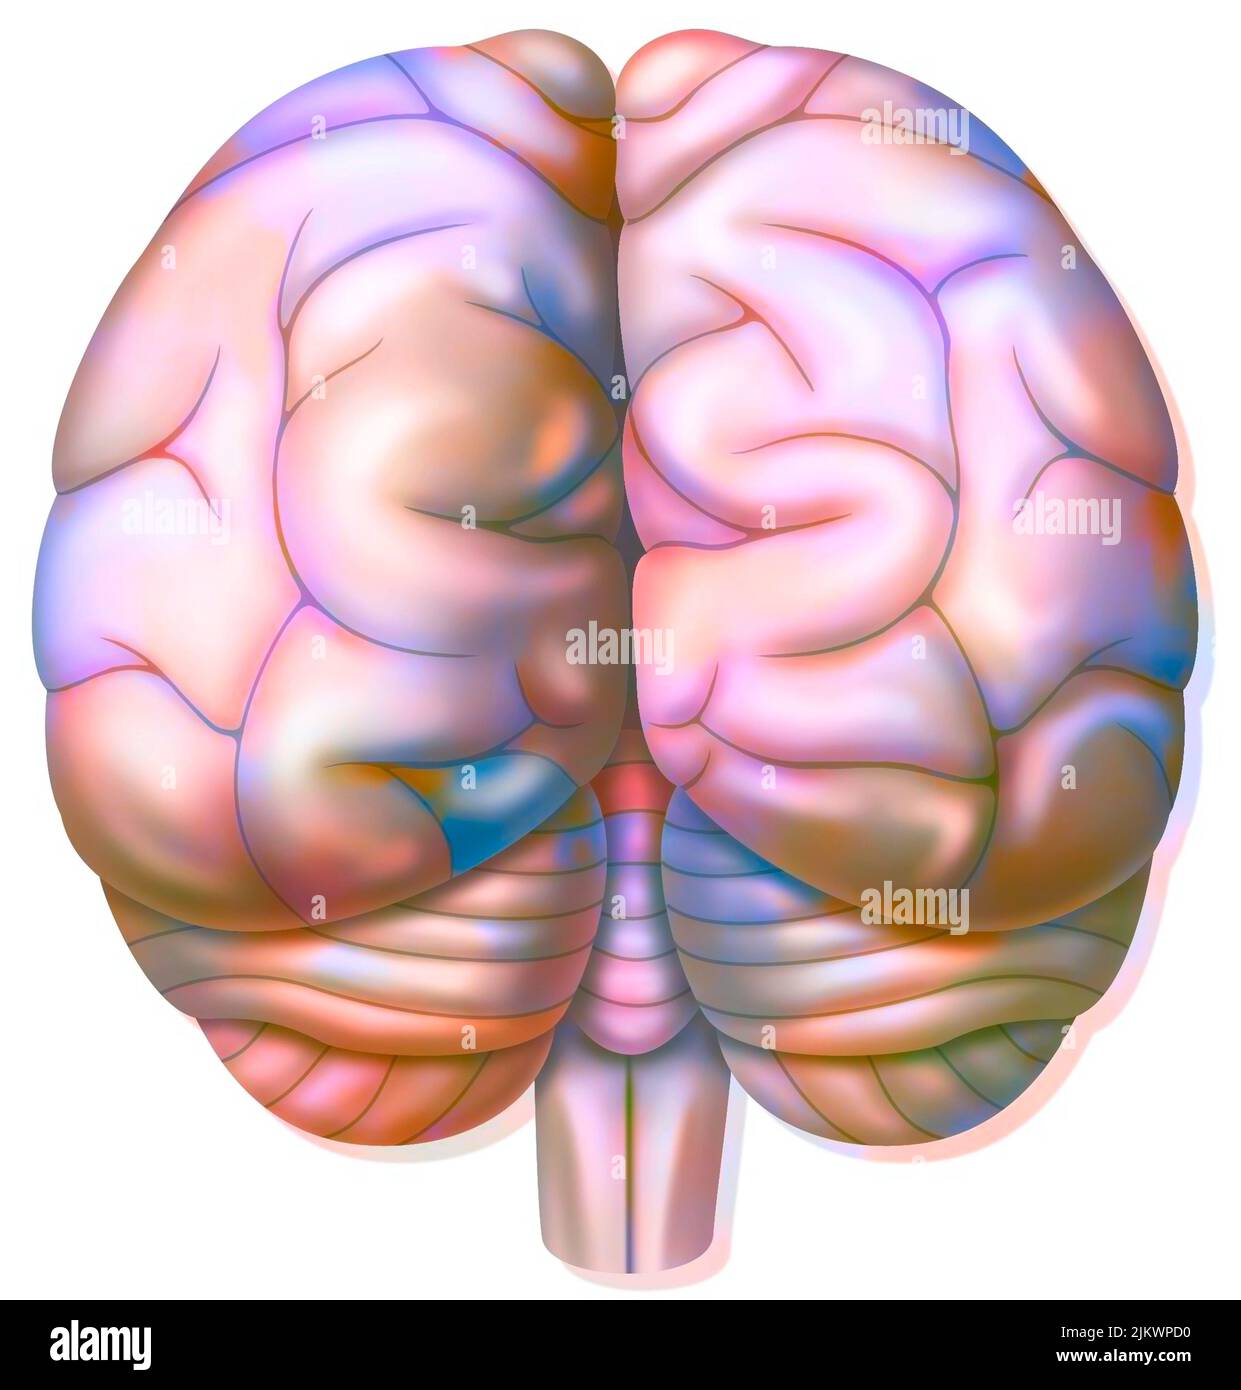 Brain with occipital, parietal, temporal lobes, cerebellum. Stock Photo